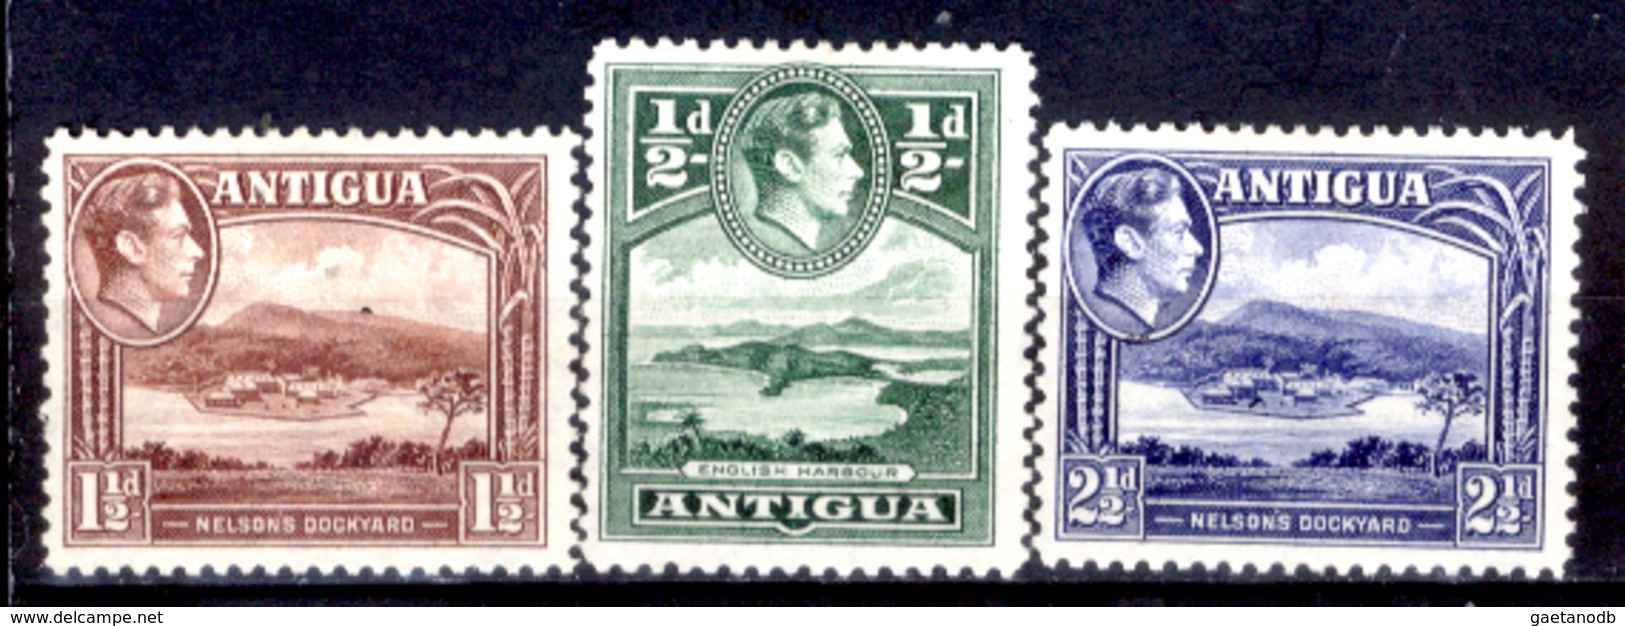 Antigua-014 - Valori Emessi Nel 1938-48 (sg) NG - Privi Di Difetti Occulti. - Antigua E Barbuda (1981-...)